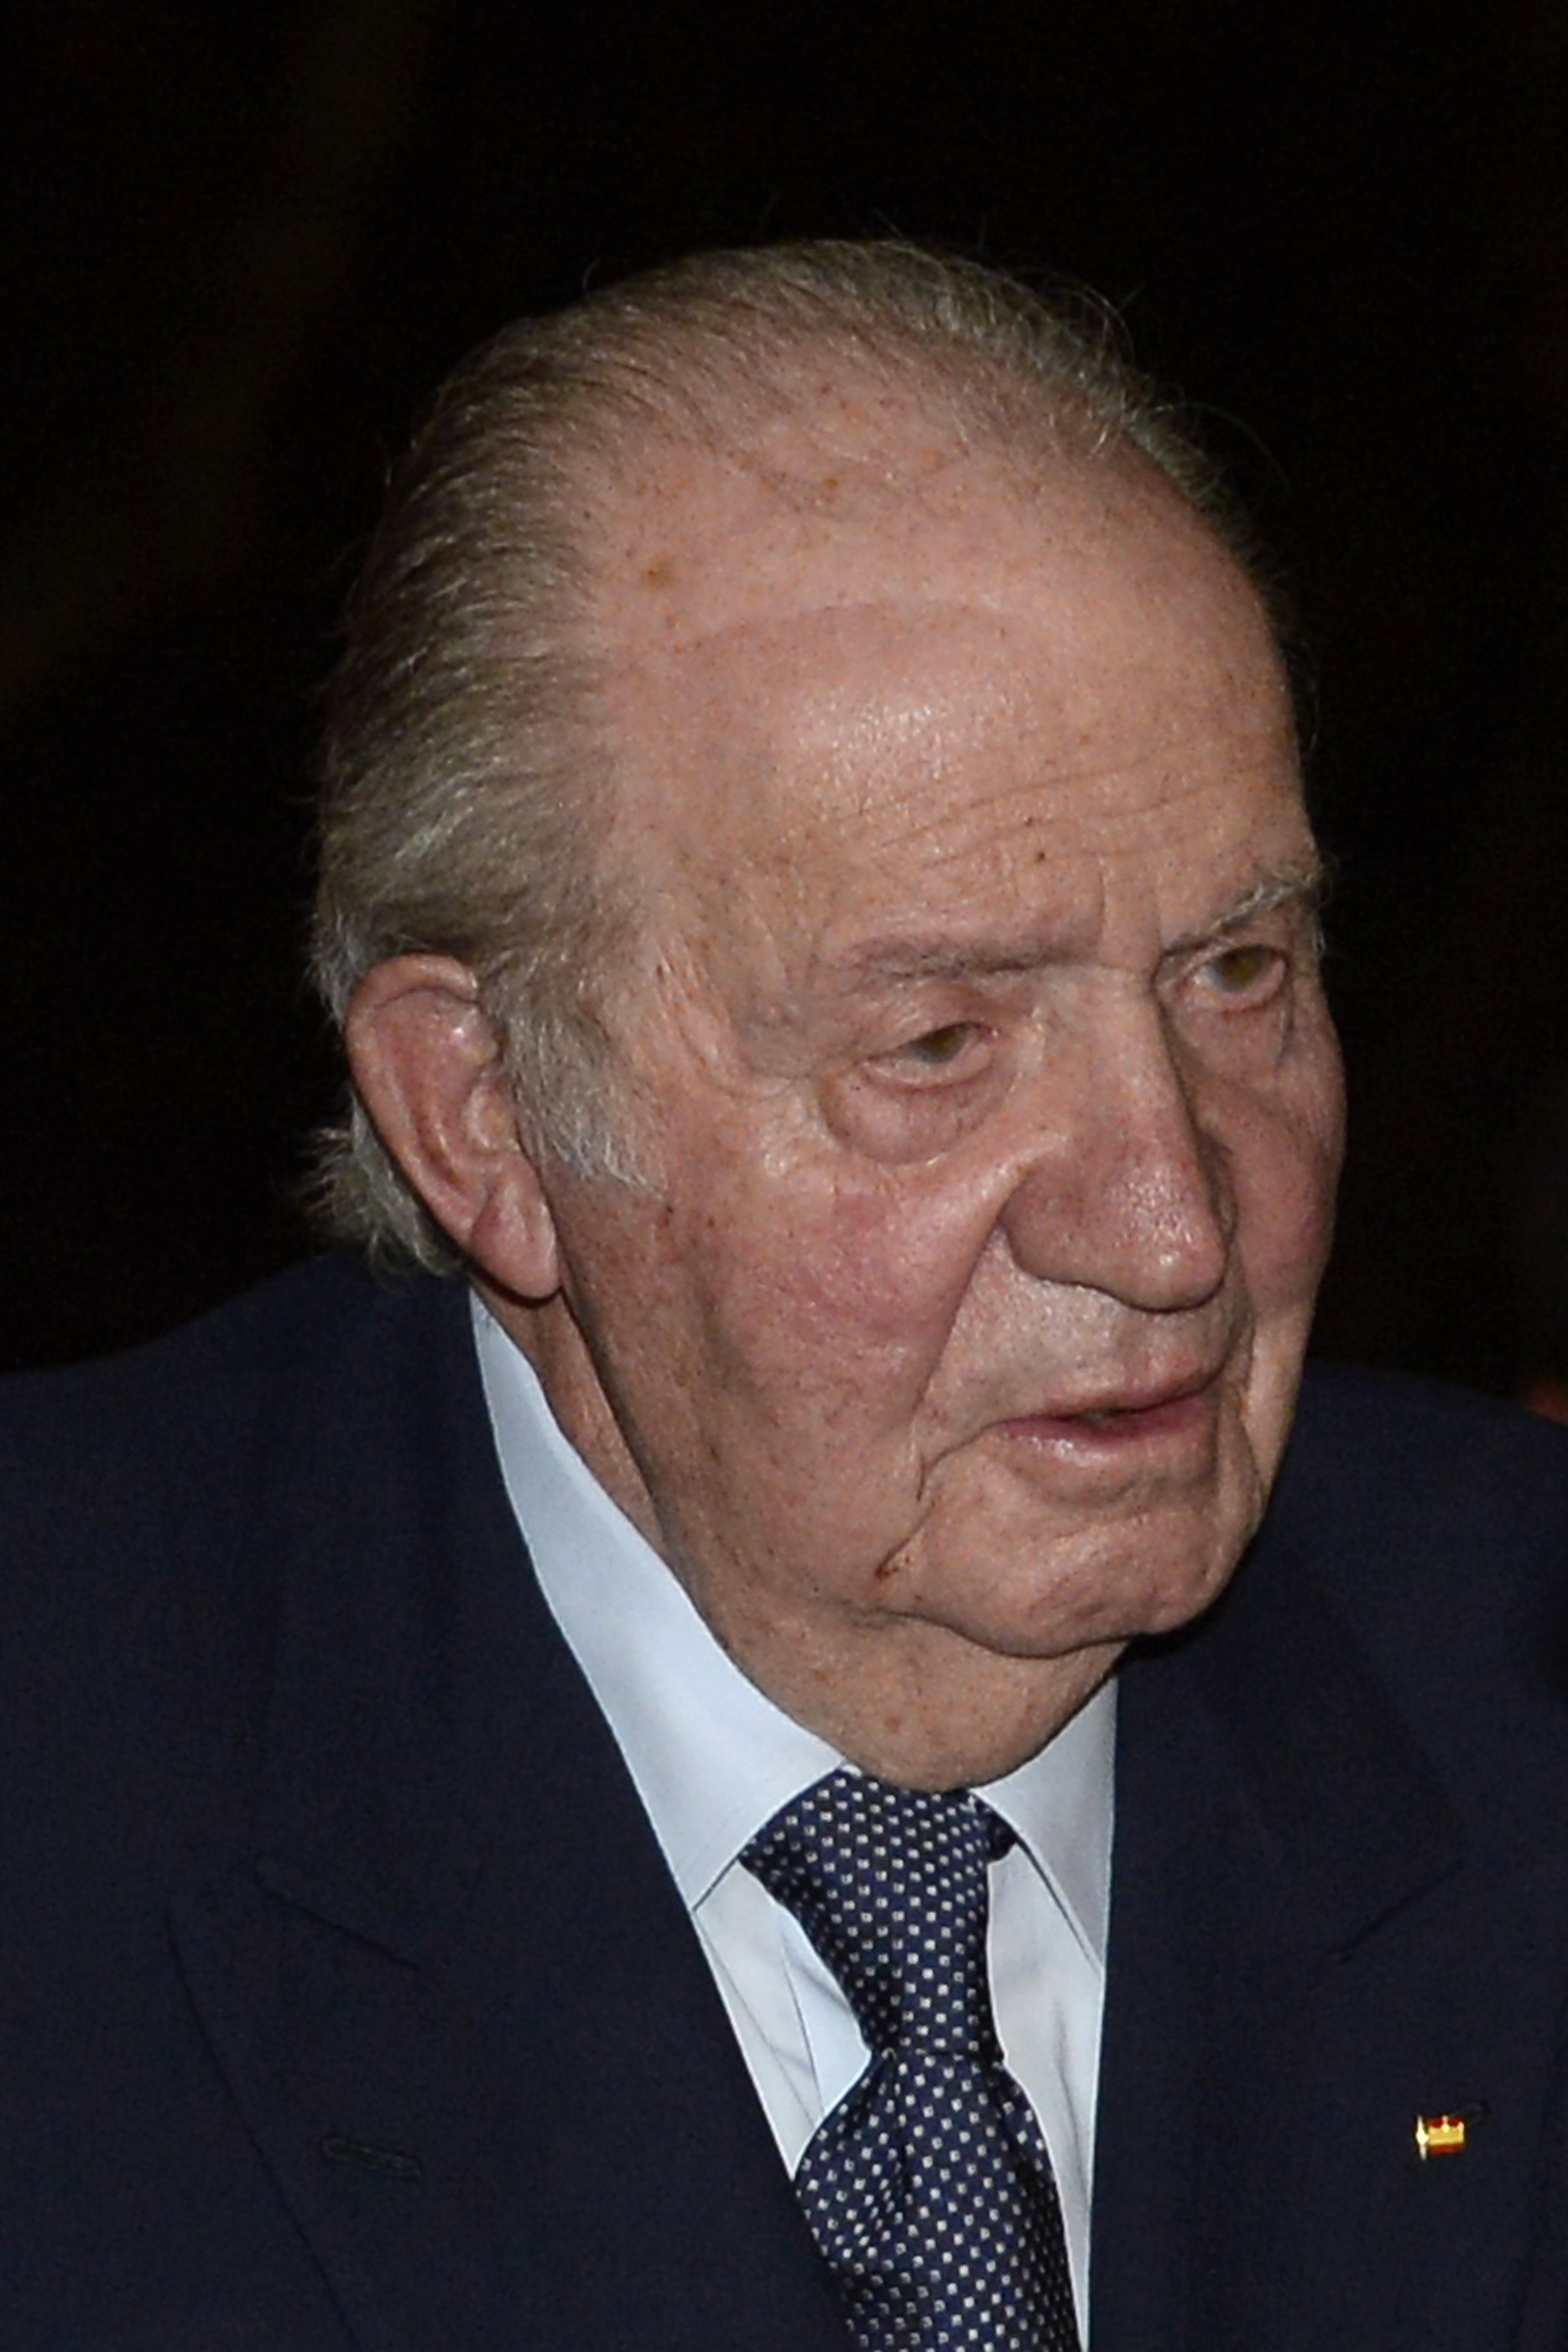 La estrategia escondida para "amparar" a Juan Carlos I, según una abogada